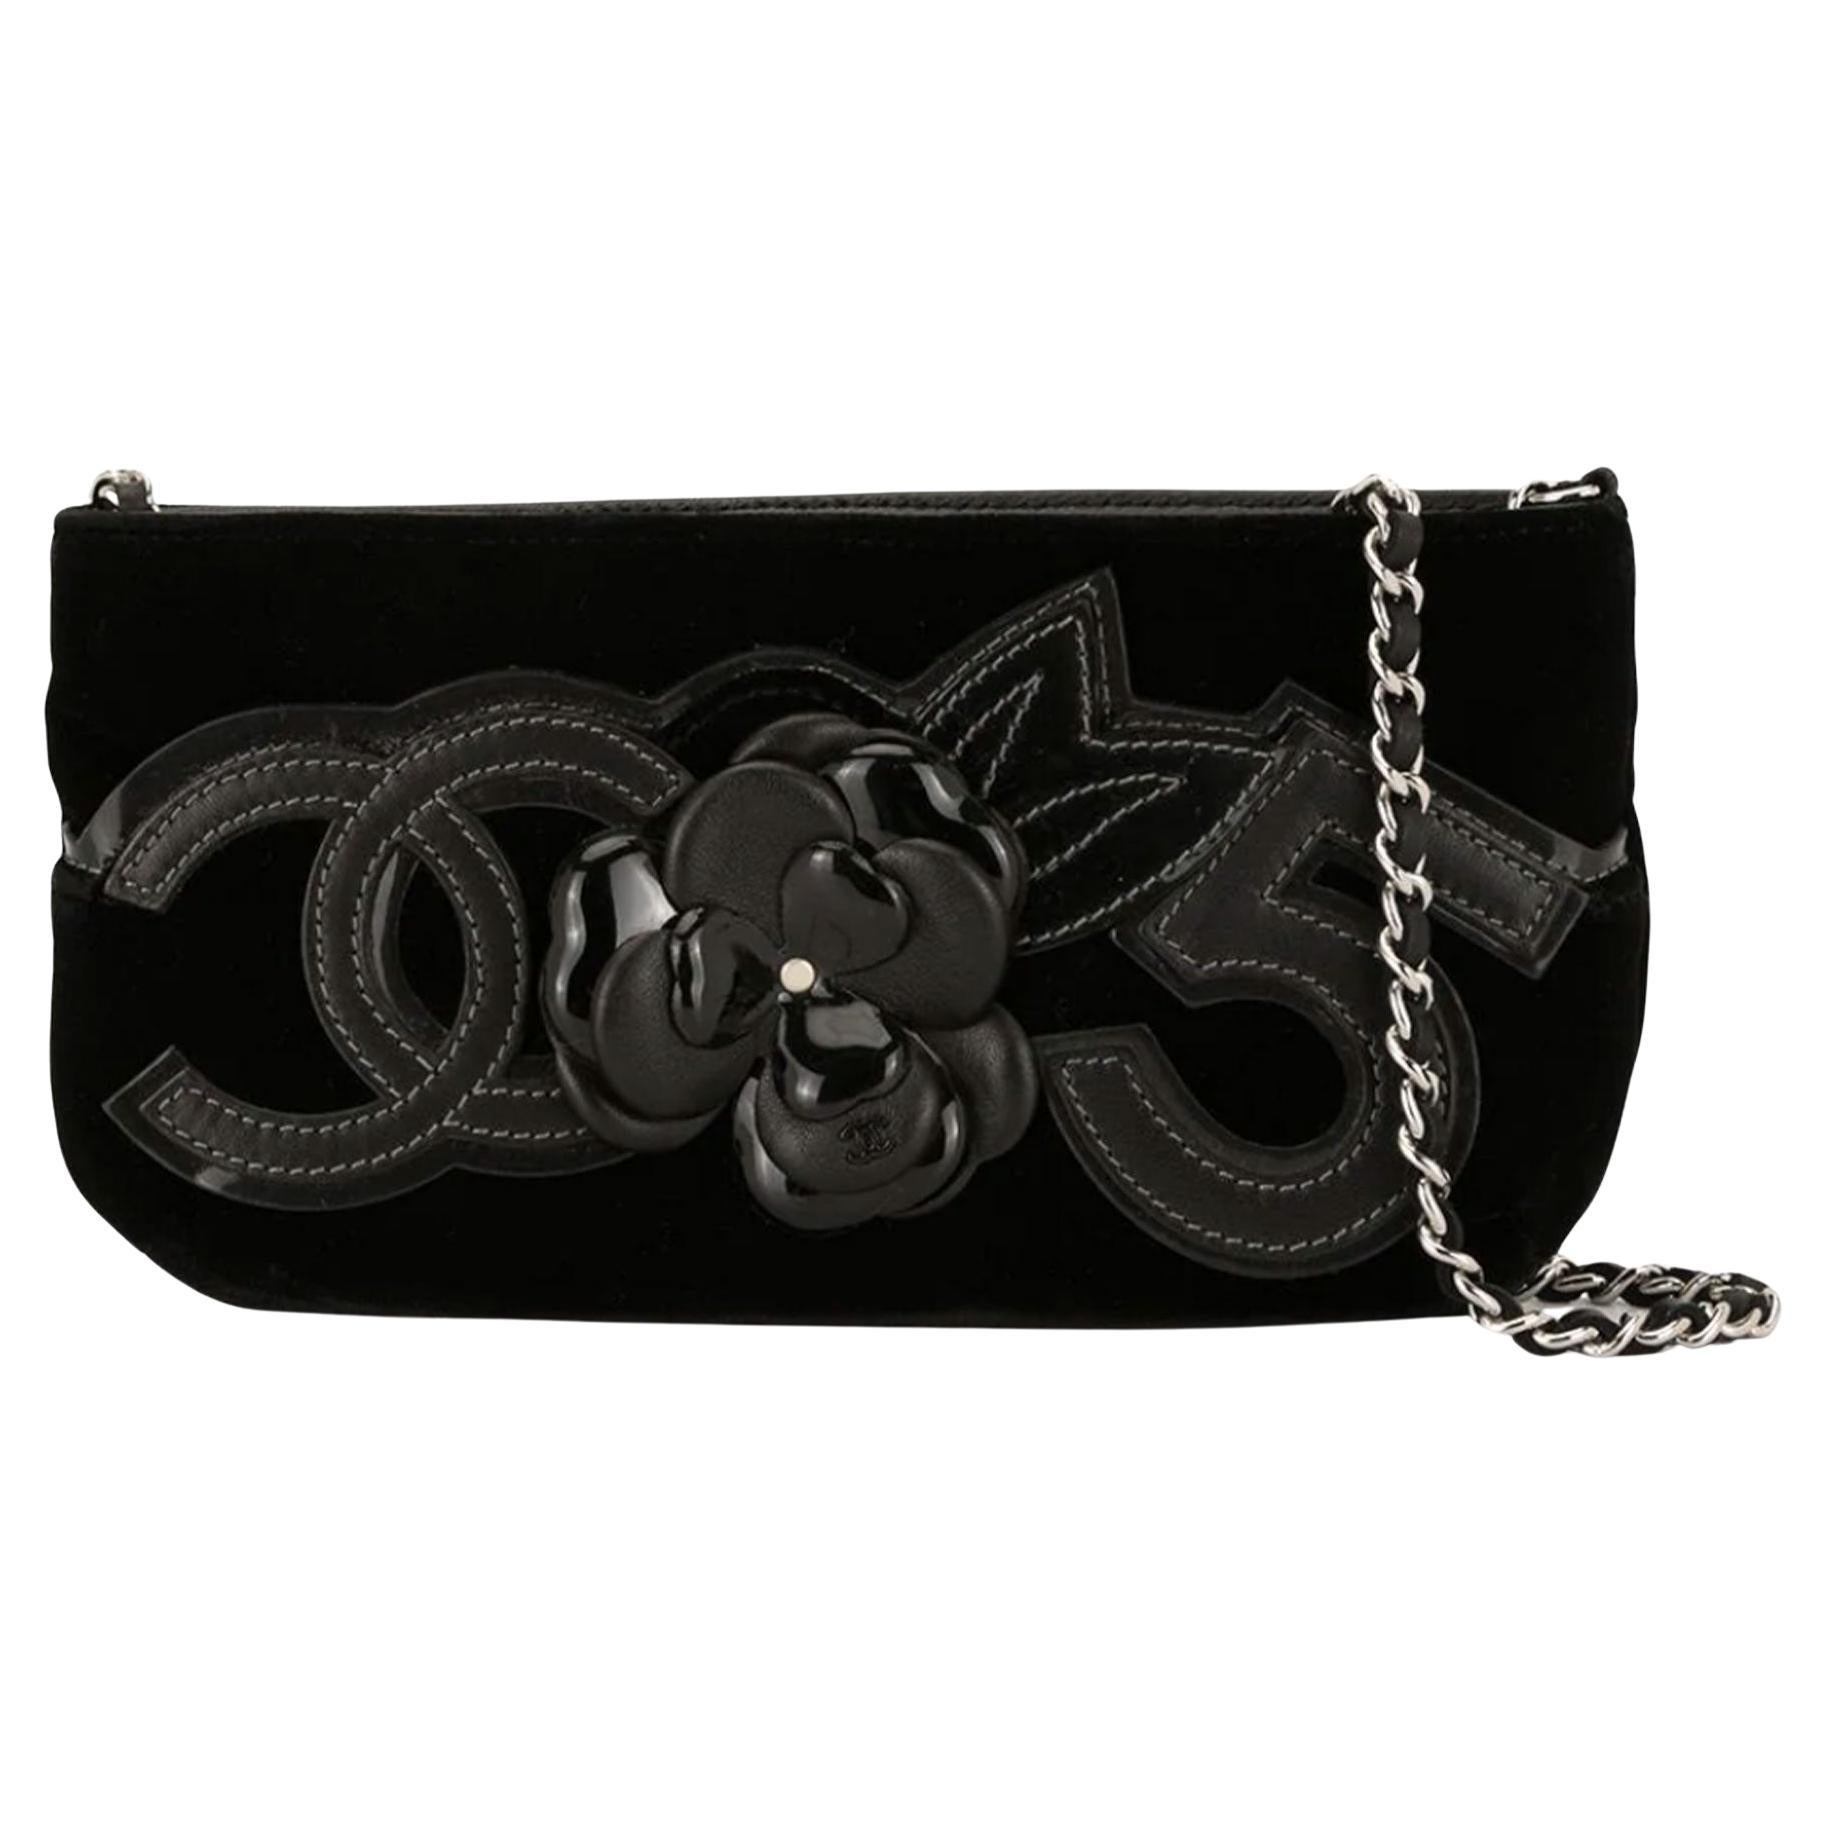 Chanel No. 5 Vintage Black Patent Leather Camellia Shoulder Bag